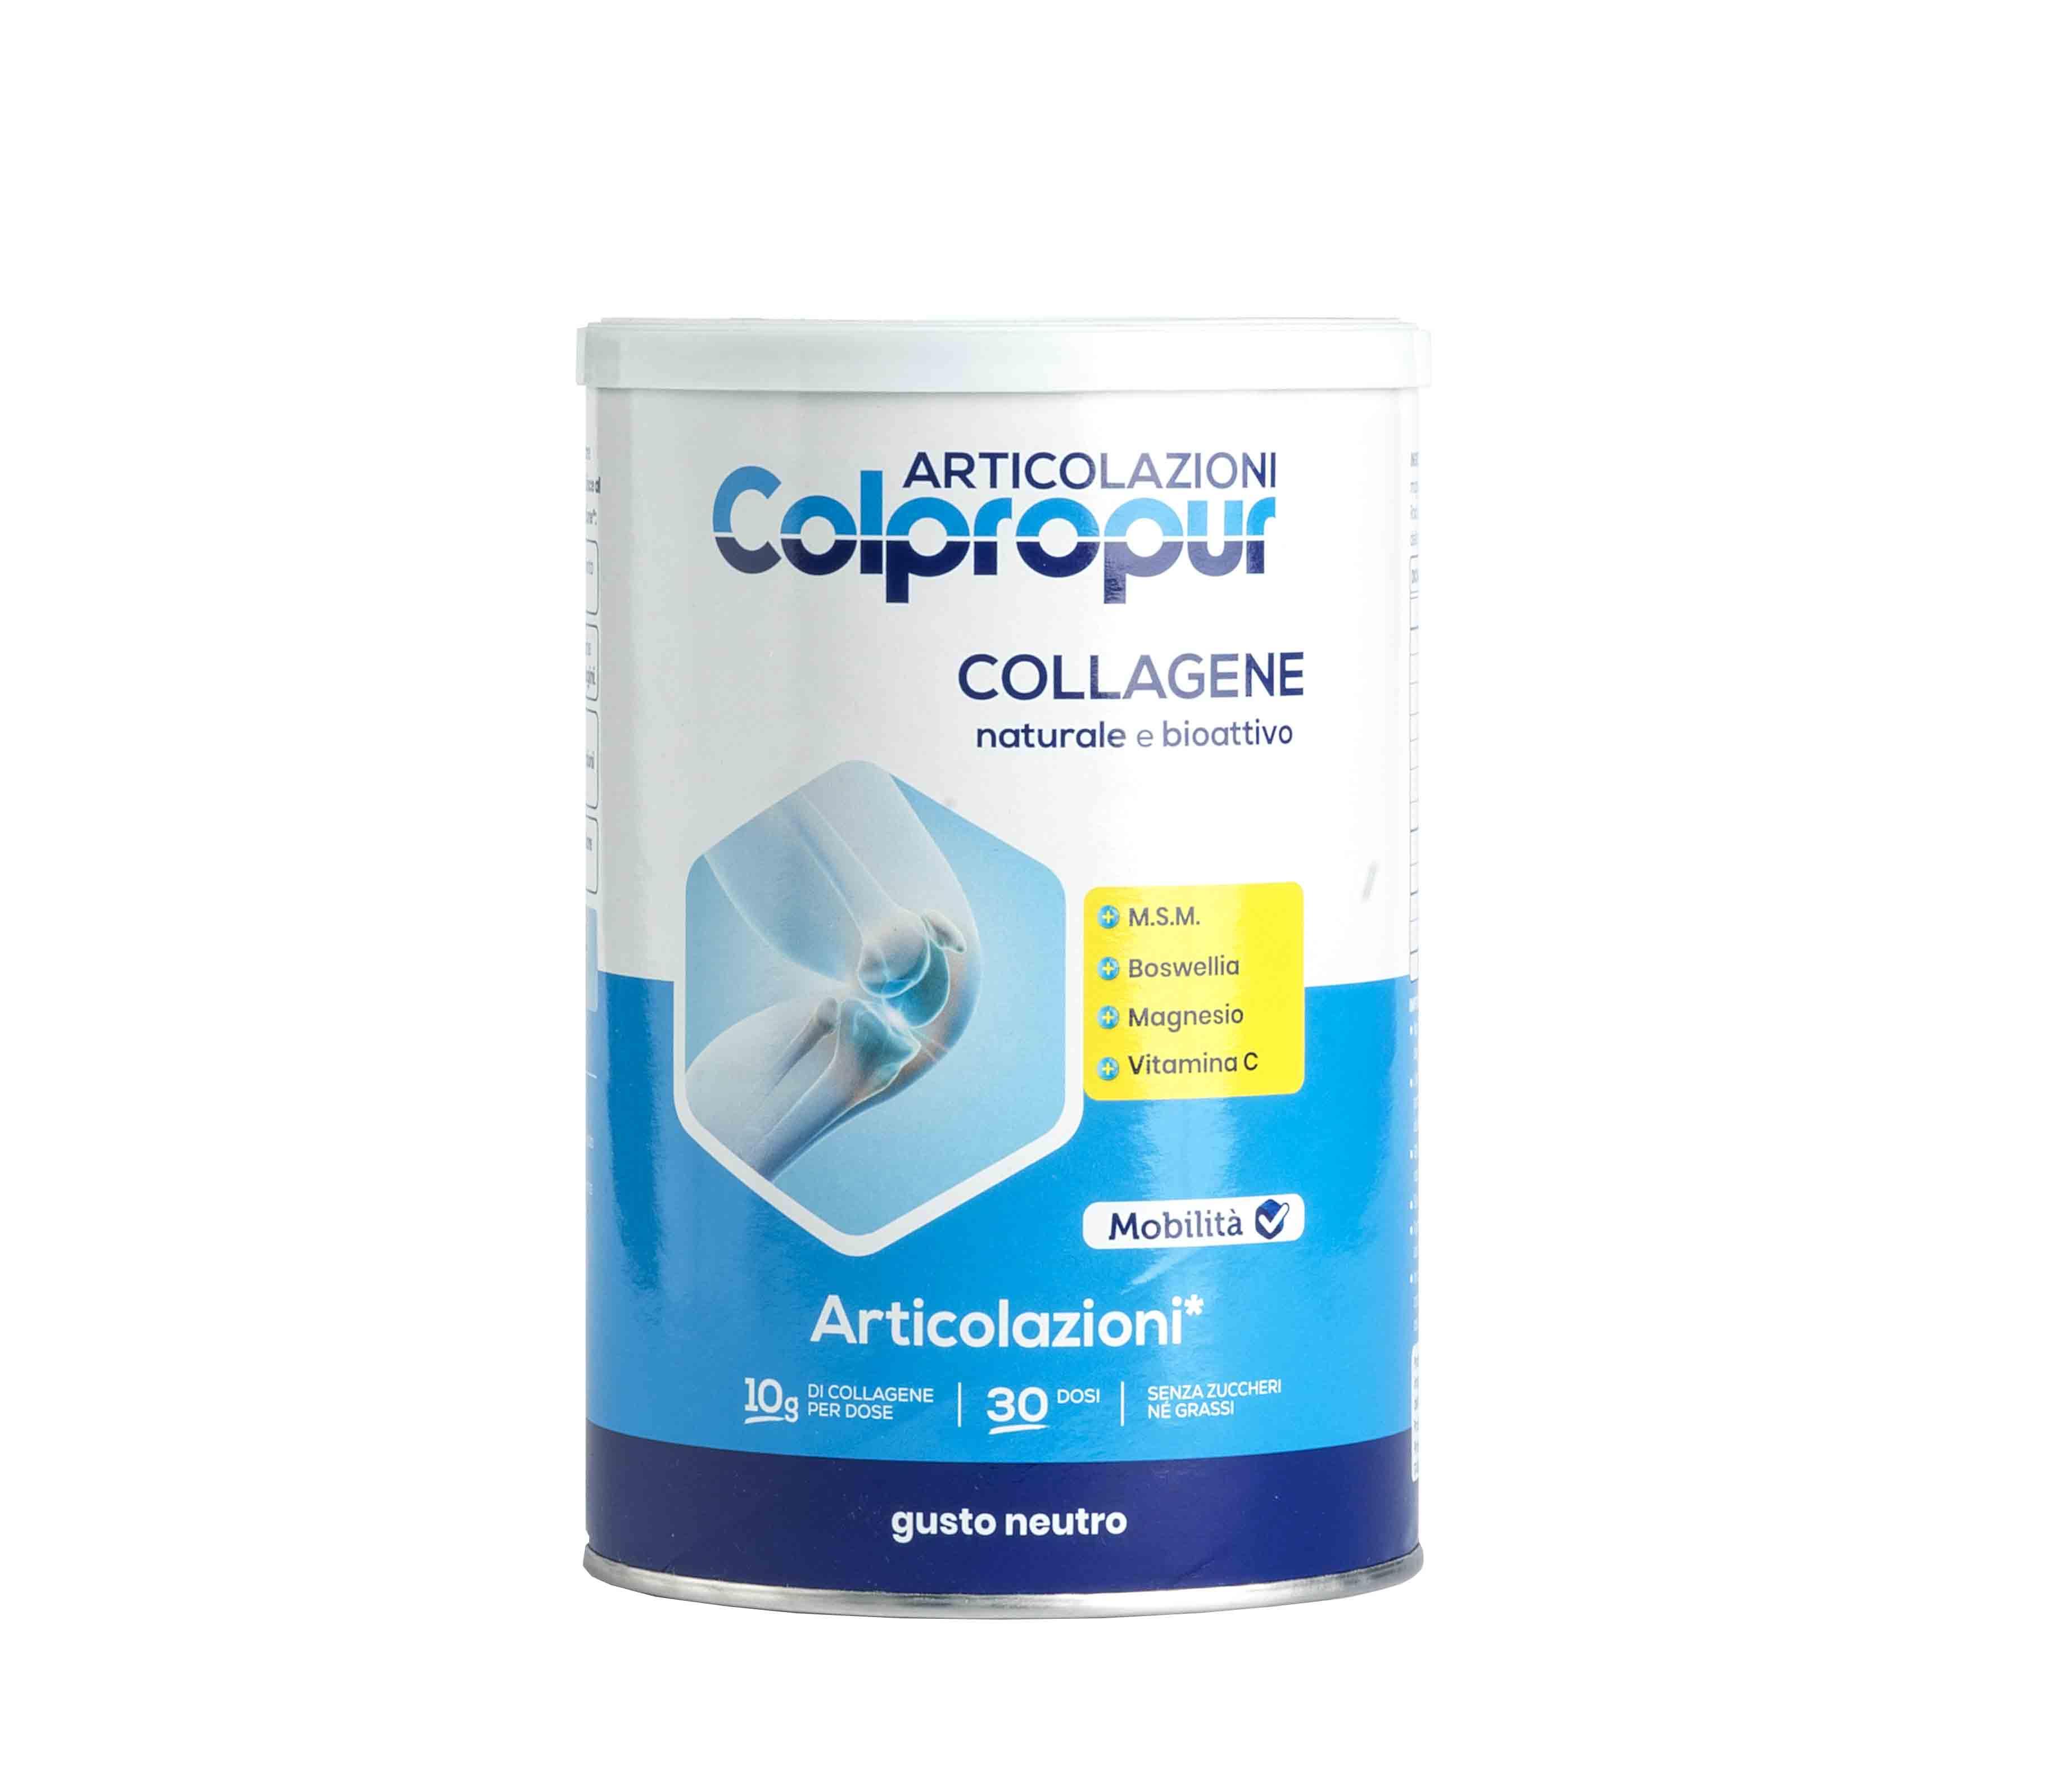 Colpropur Articolazioni integratore di collagene naturale bioattivo 336g